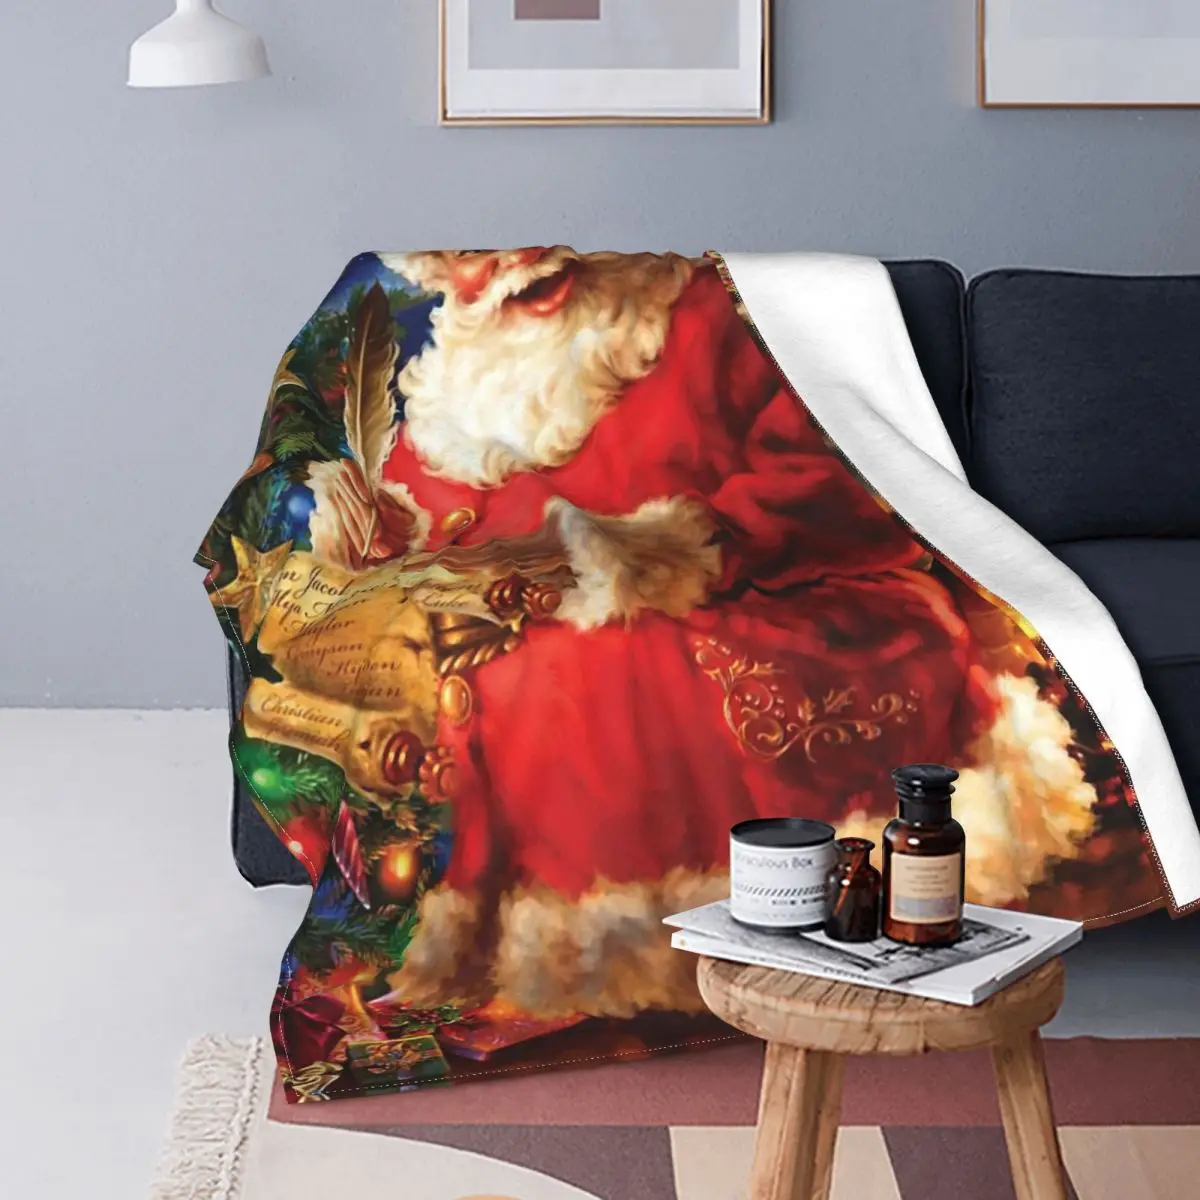 

Фланелевое Одеяло Dona Gelsinger с Санта-Клаусом, покрывало для постельного белья, тонкое плюшевое тонкое покрывало для спальни, на Рождество и но...